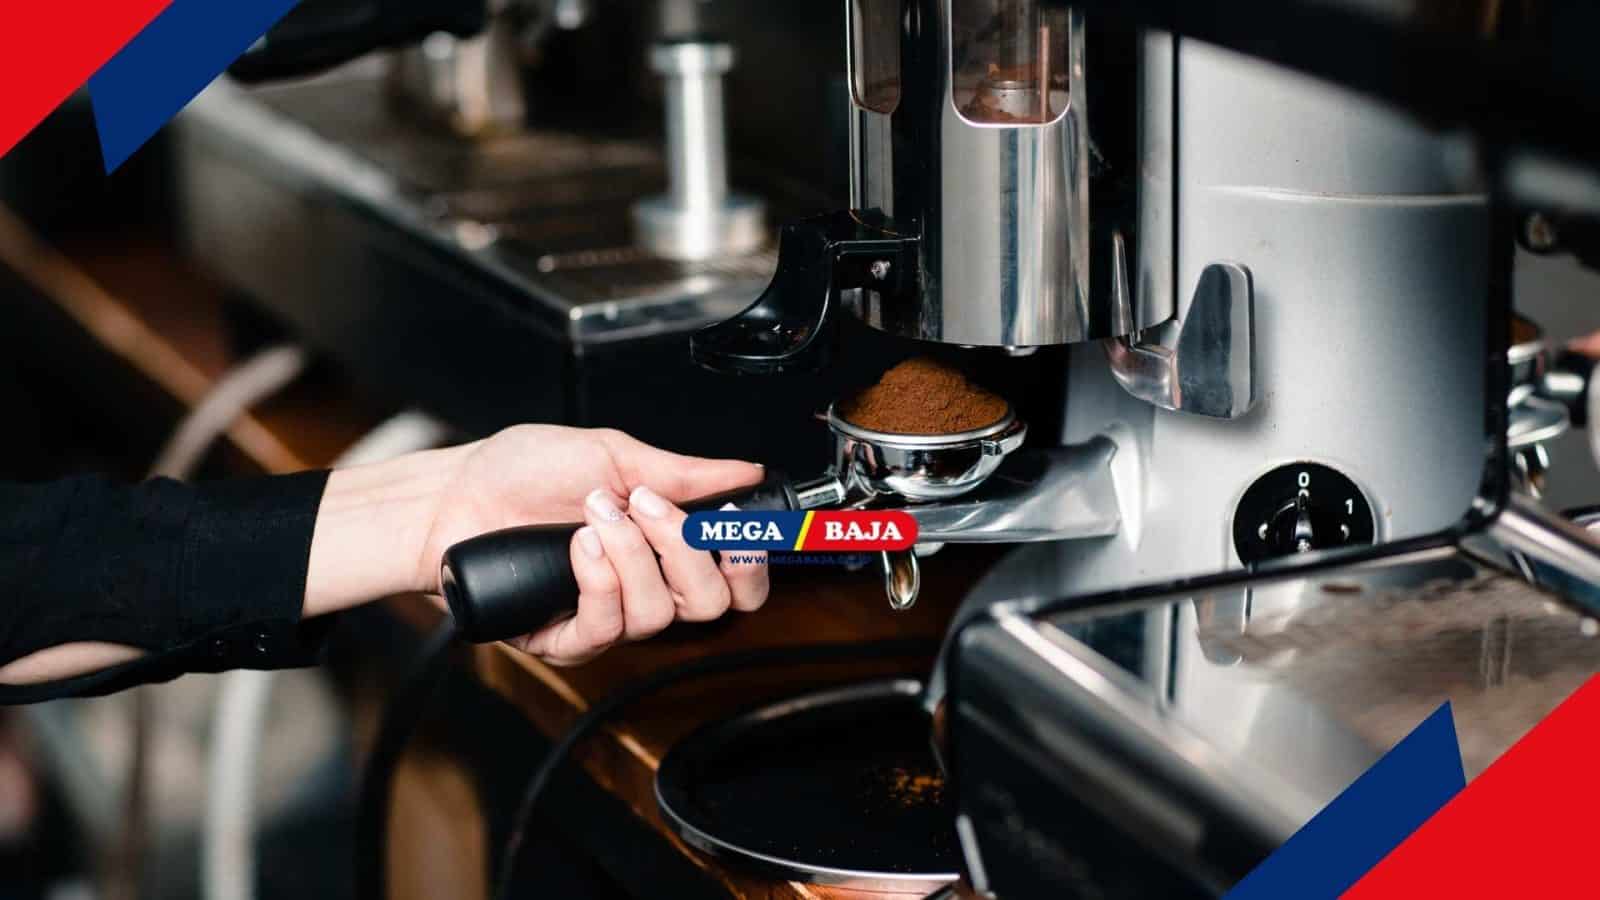 Jenis-jenis Mesin Kopi dan Tips Memilih Coffee Maker Sesuai Kebutuhan